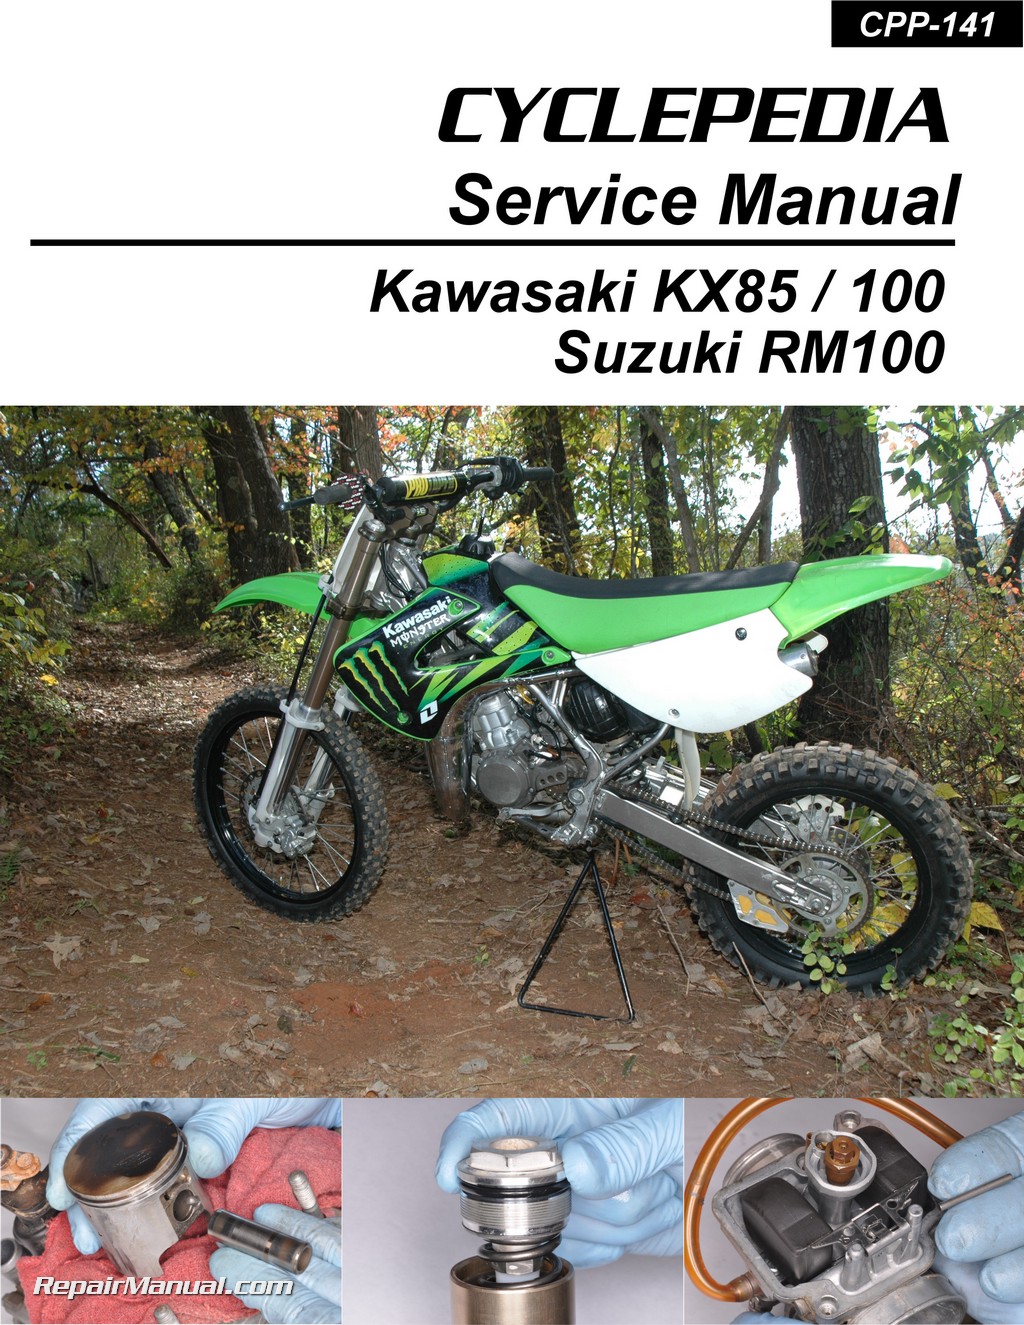 Kawasaki kx100 sale